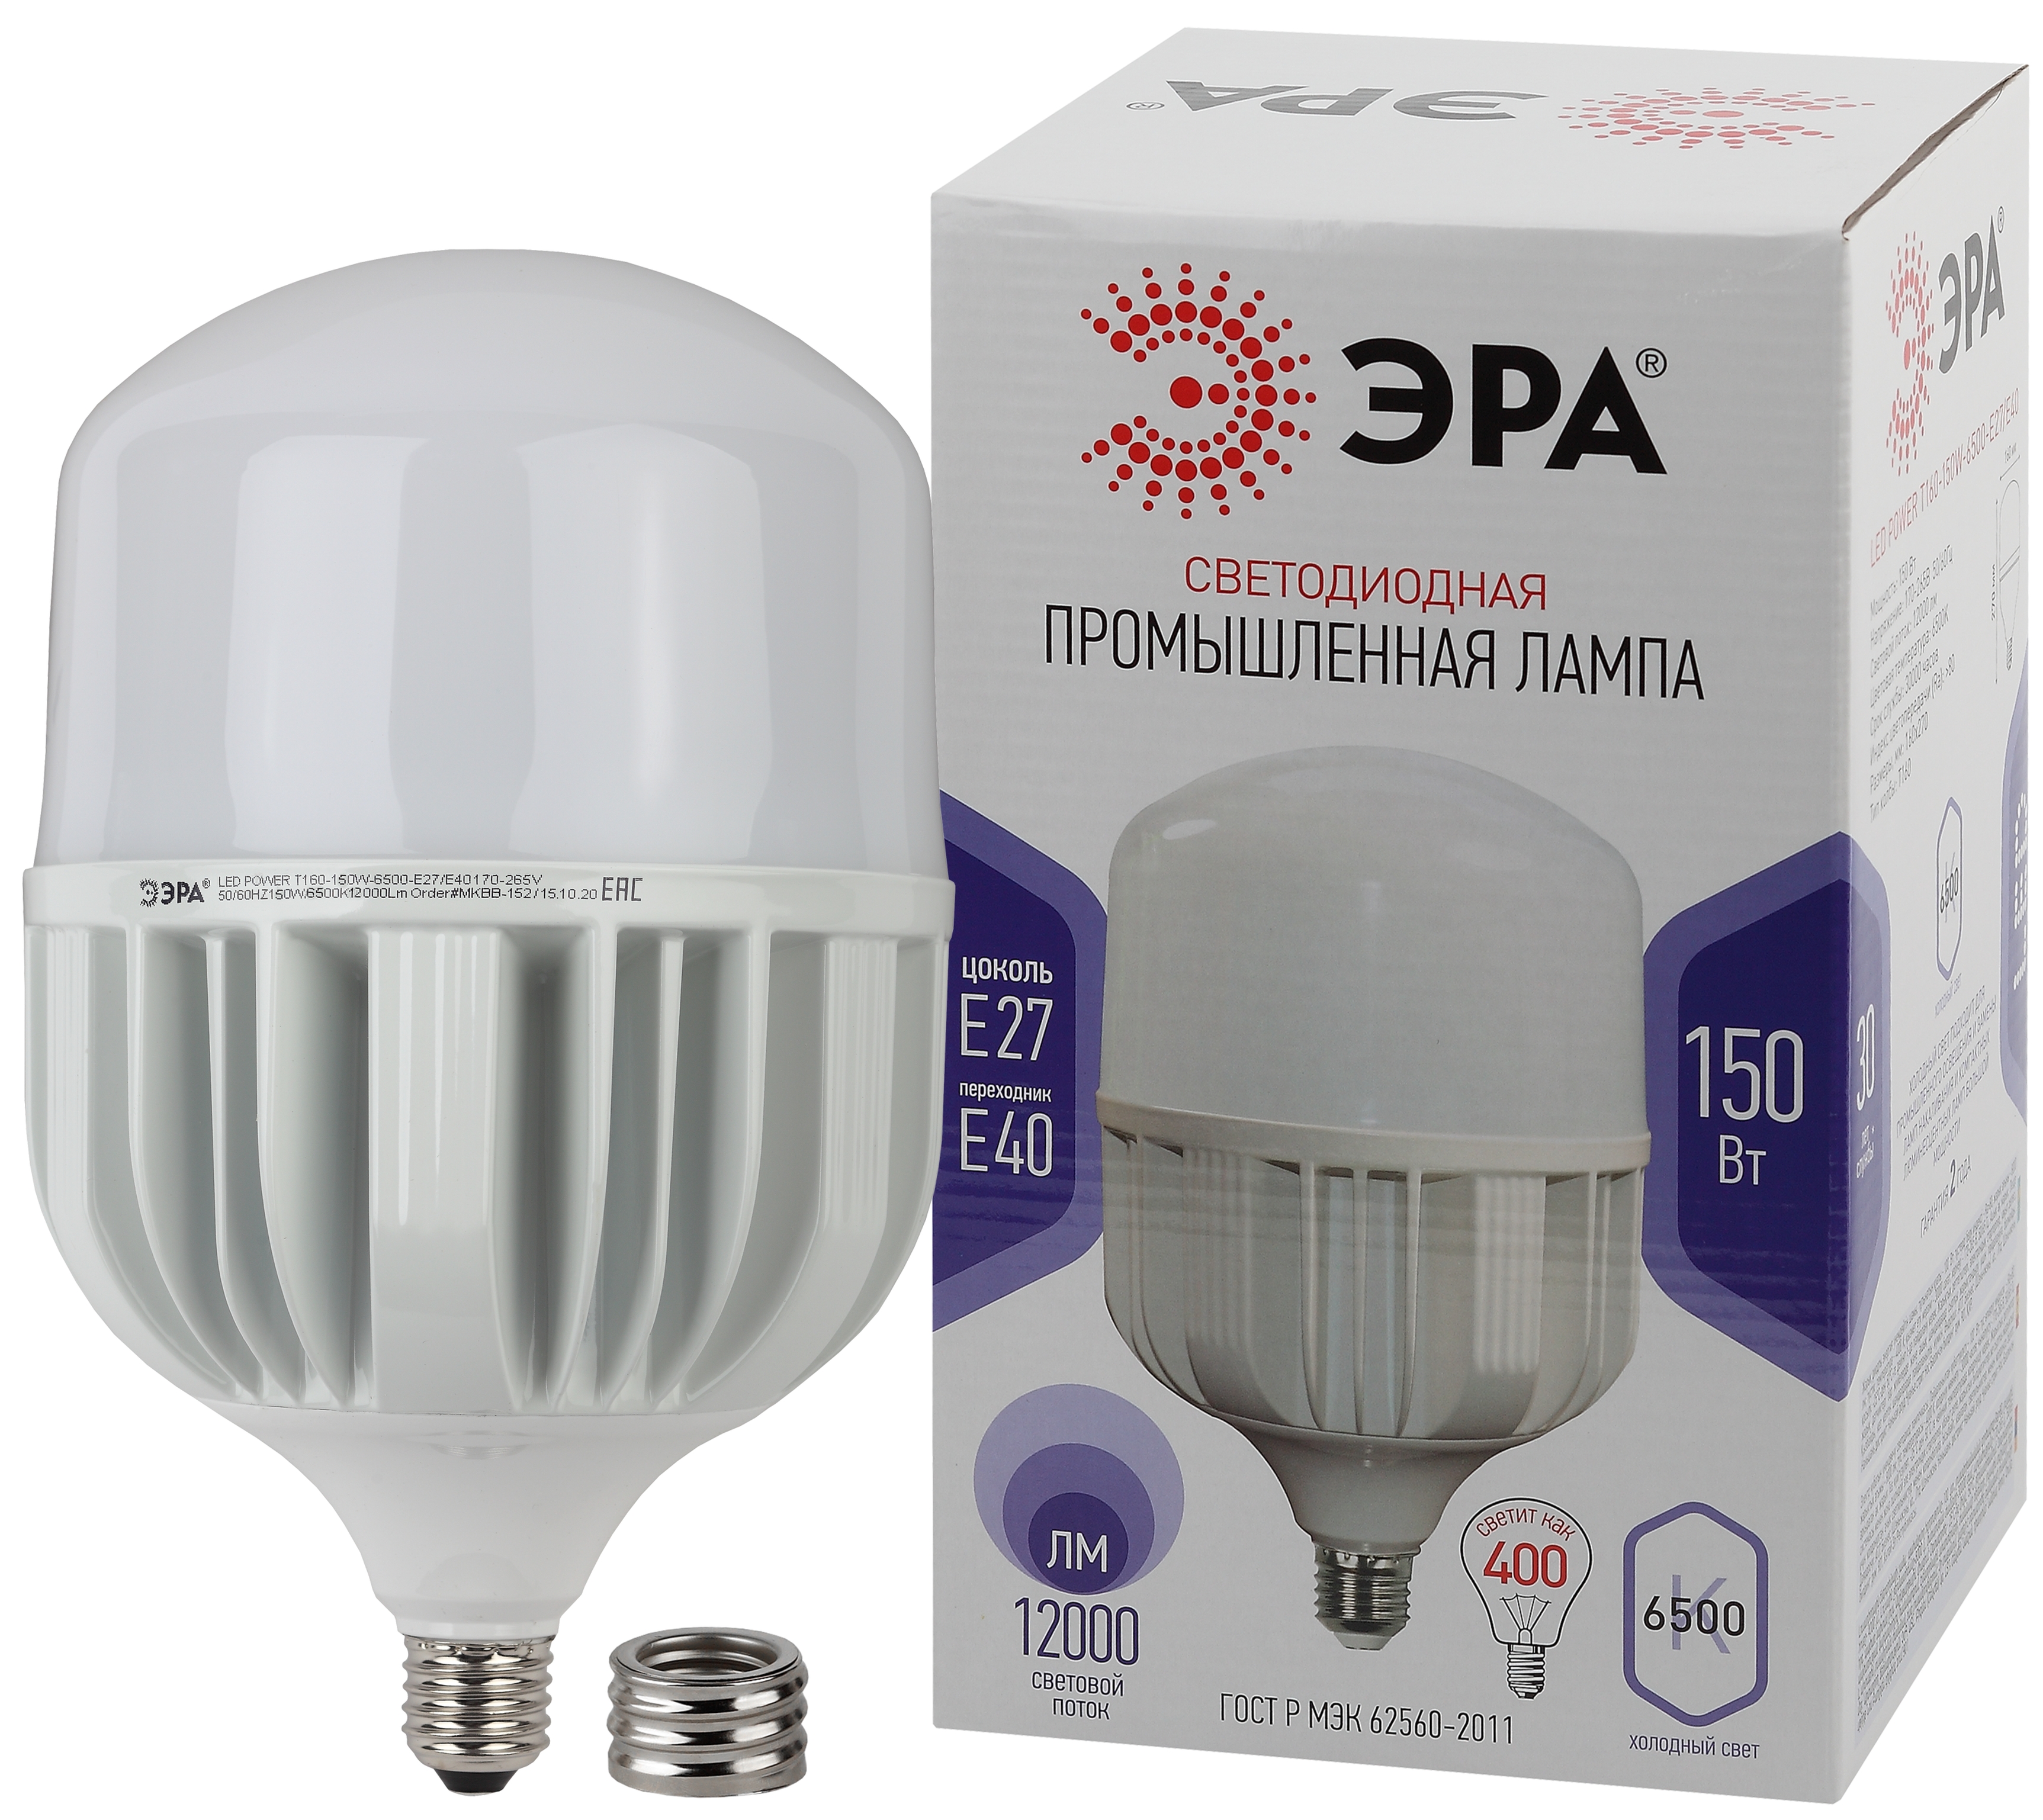 LED POWER T160-150W-6500-E27/E40 ЭРА (диод, колокол, 150Вт, холодн, E27/E40) (6/96)